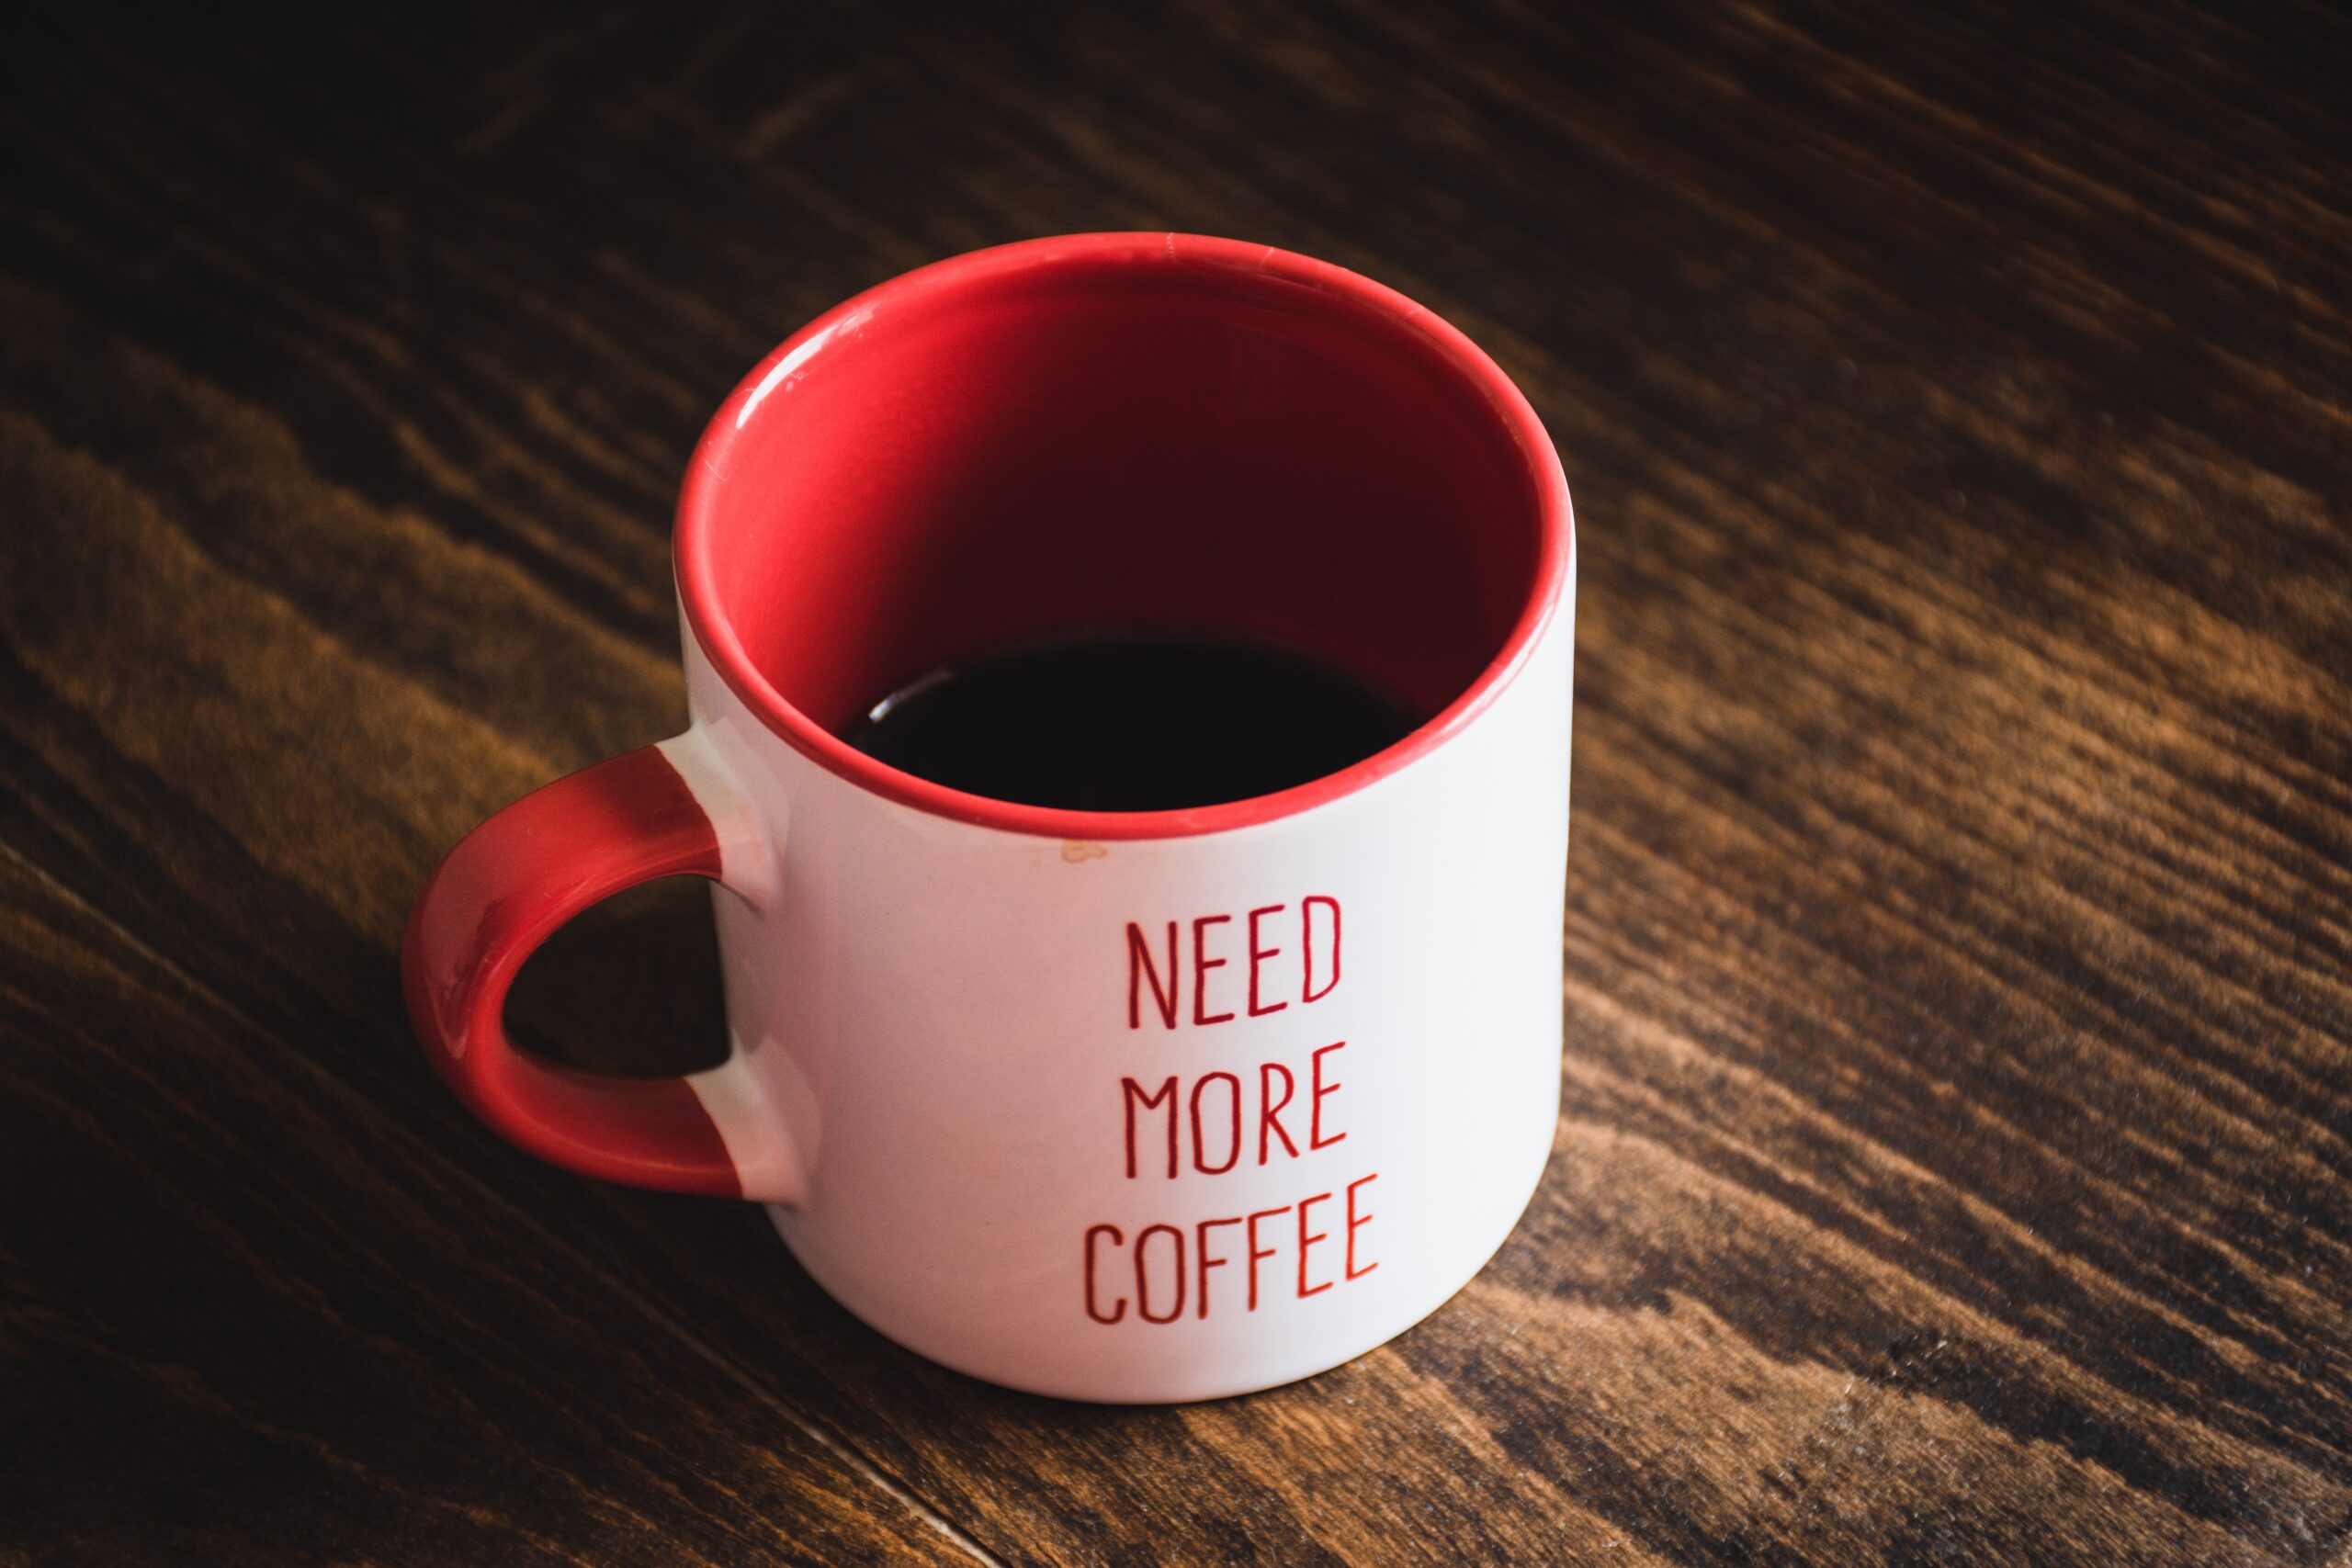 Espresso vs Coffee: Which Has More Caffeine?